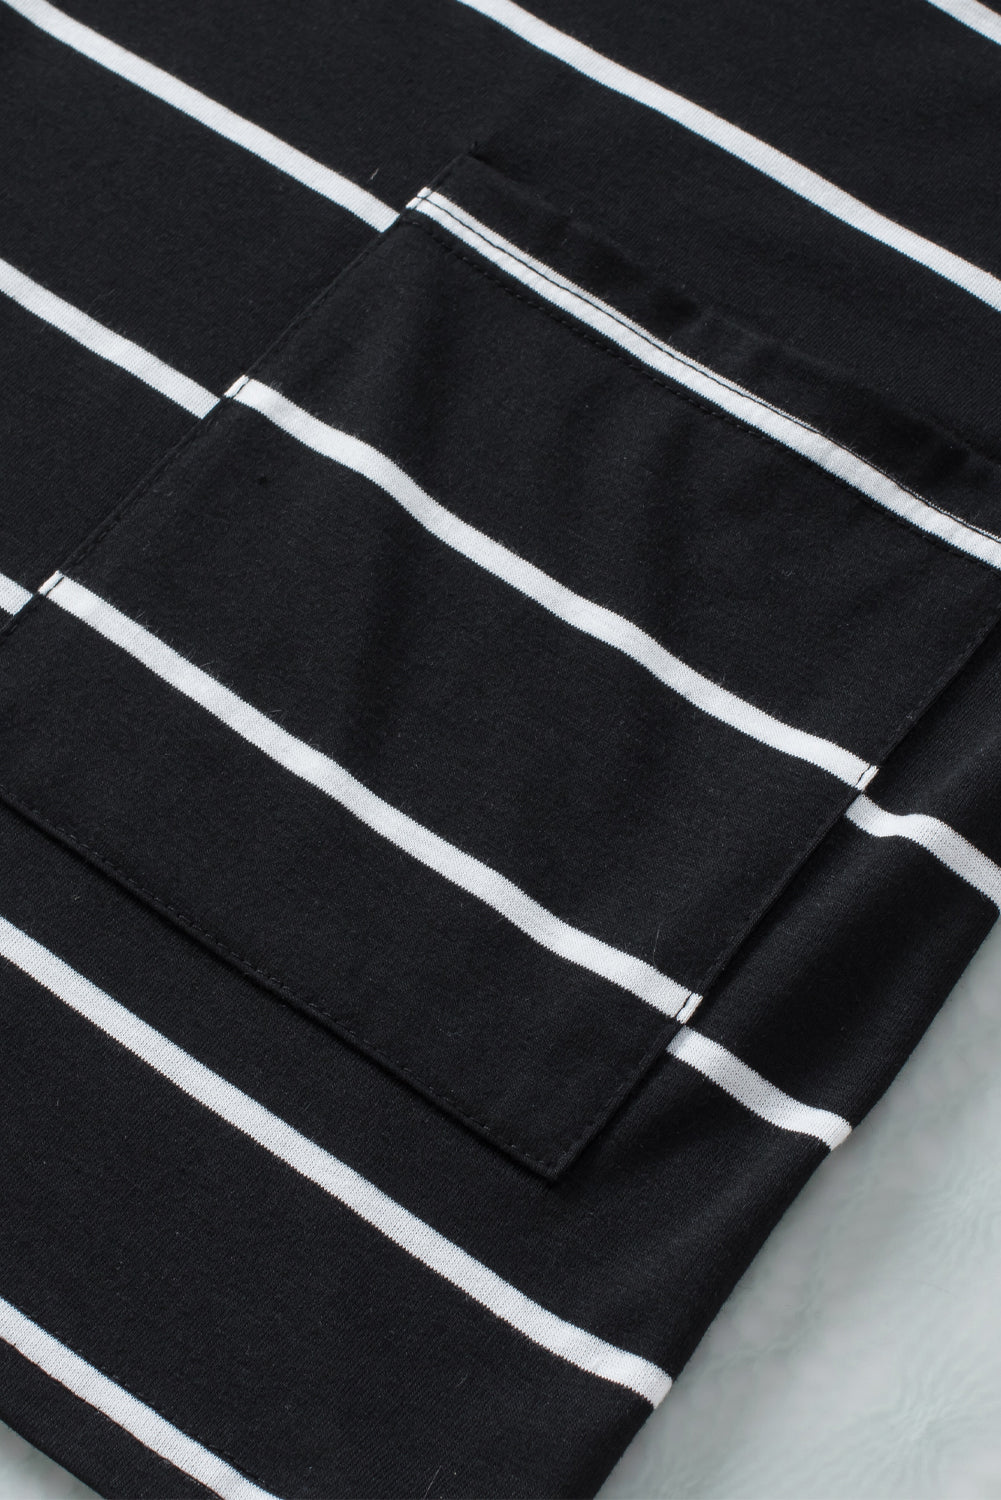 Haut tunique noir à manches courtes et poches latérales imprimées à rayures